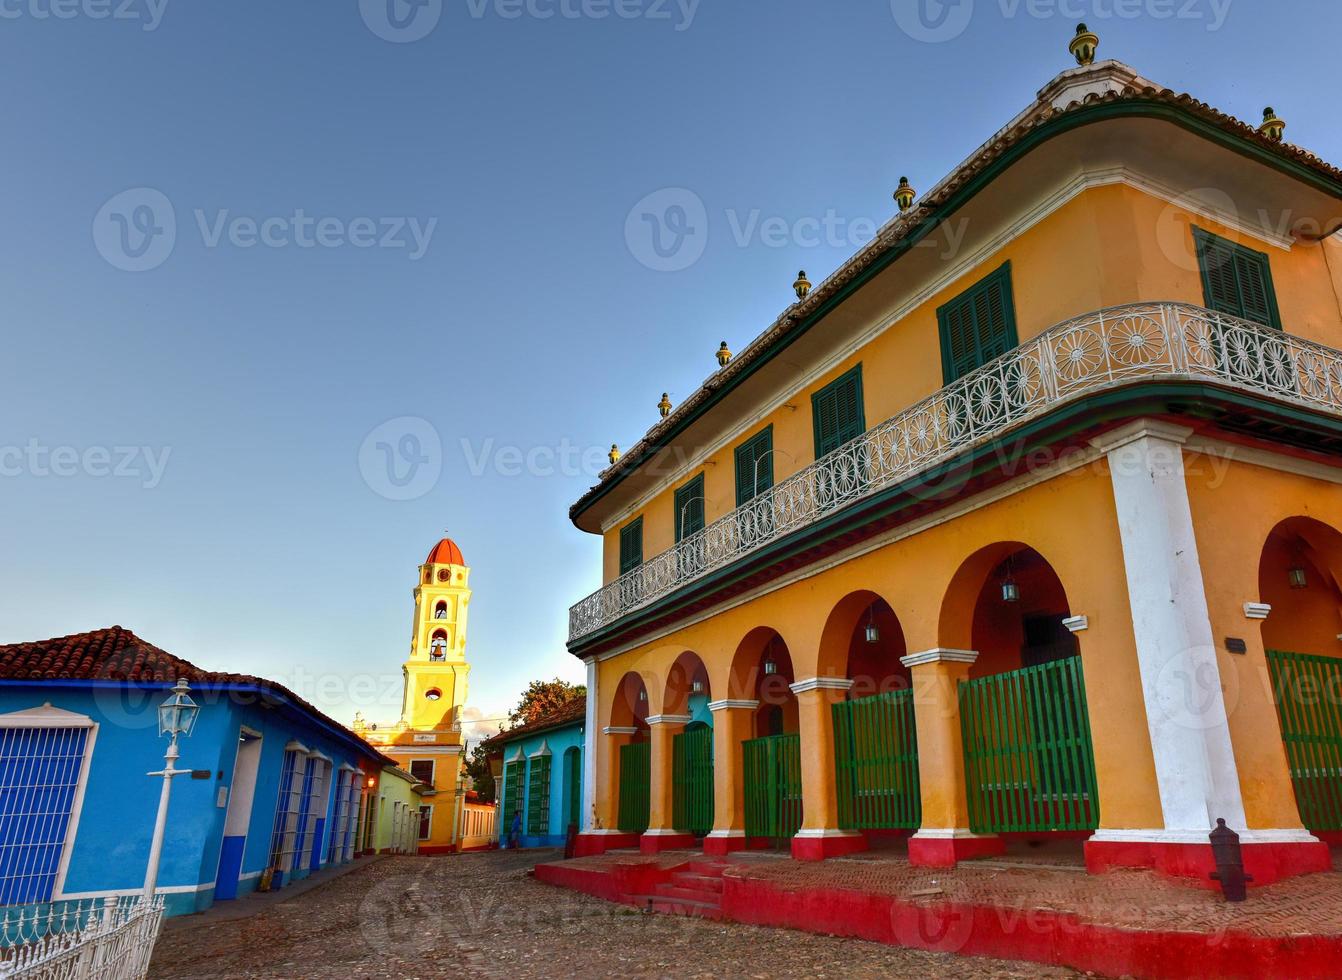 palacio brunet in de plein burgemeester in de centrum van Trinidad, Cuba, een UNESCO wereld erfgoed plaats. foto